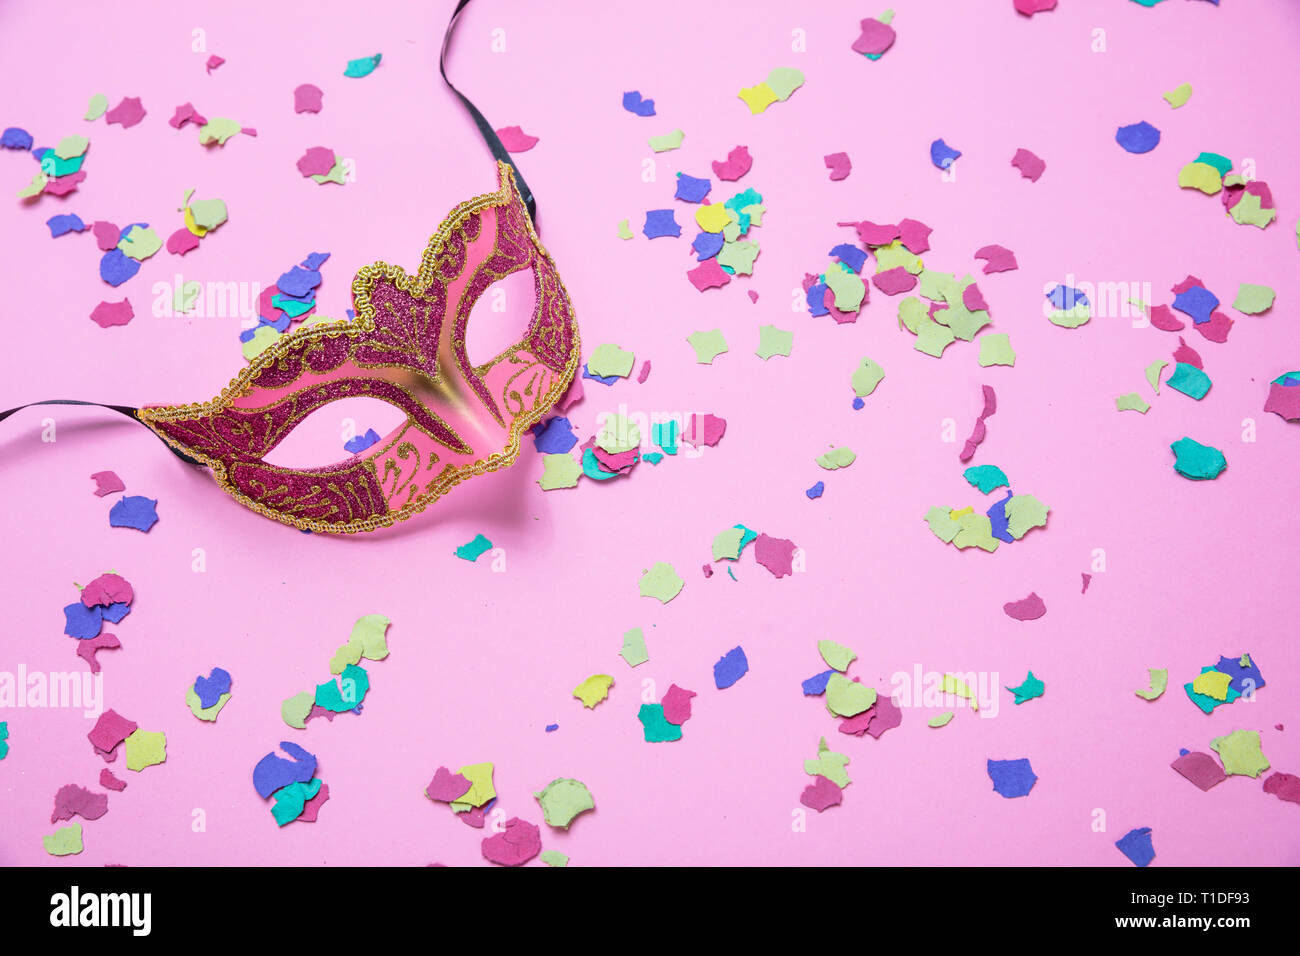 Carnaval, fête d'anniversaire. Femme masque de Venise et de confettis colorés sur fond rose Banque D'Images